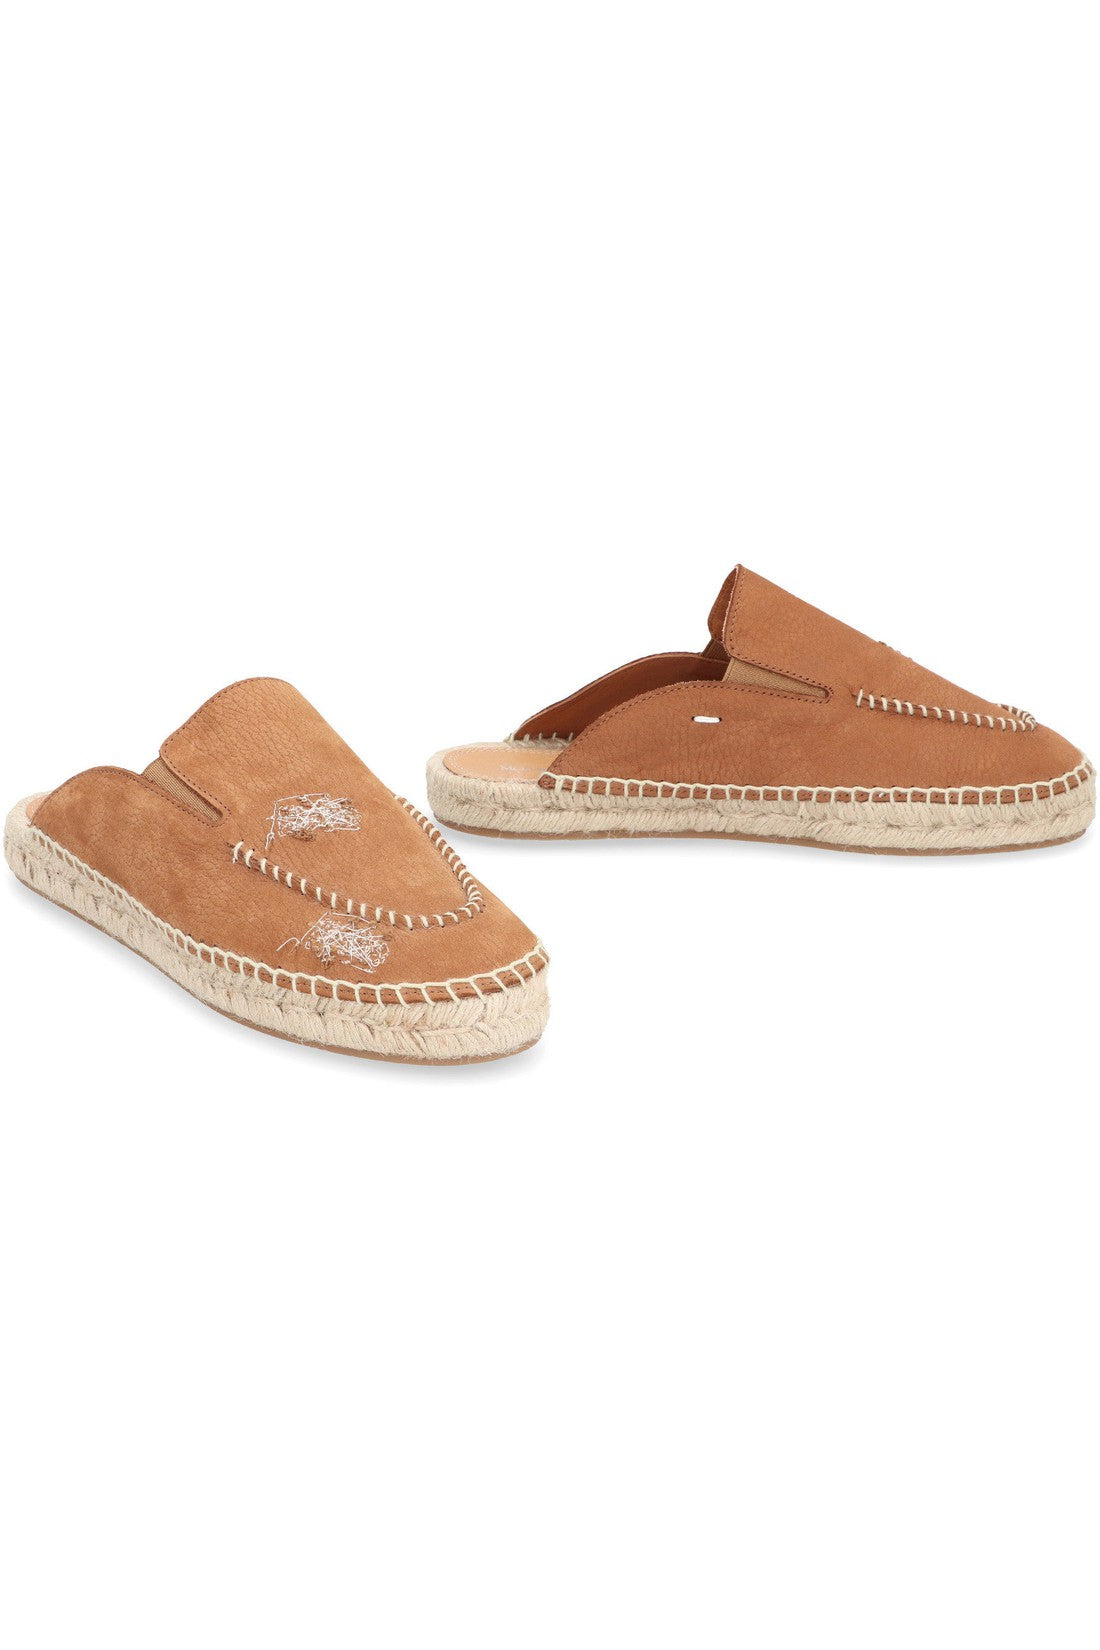 Maison Margiela-OUTLET-SALE-Leather slippers-ARCHIVIST